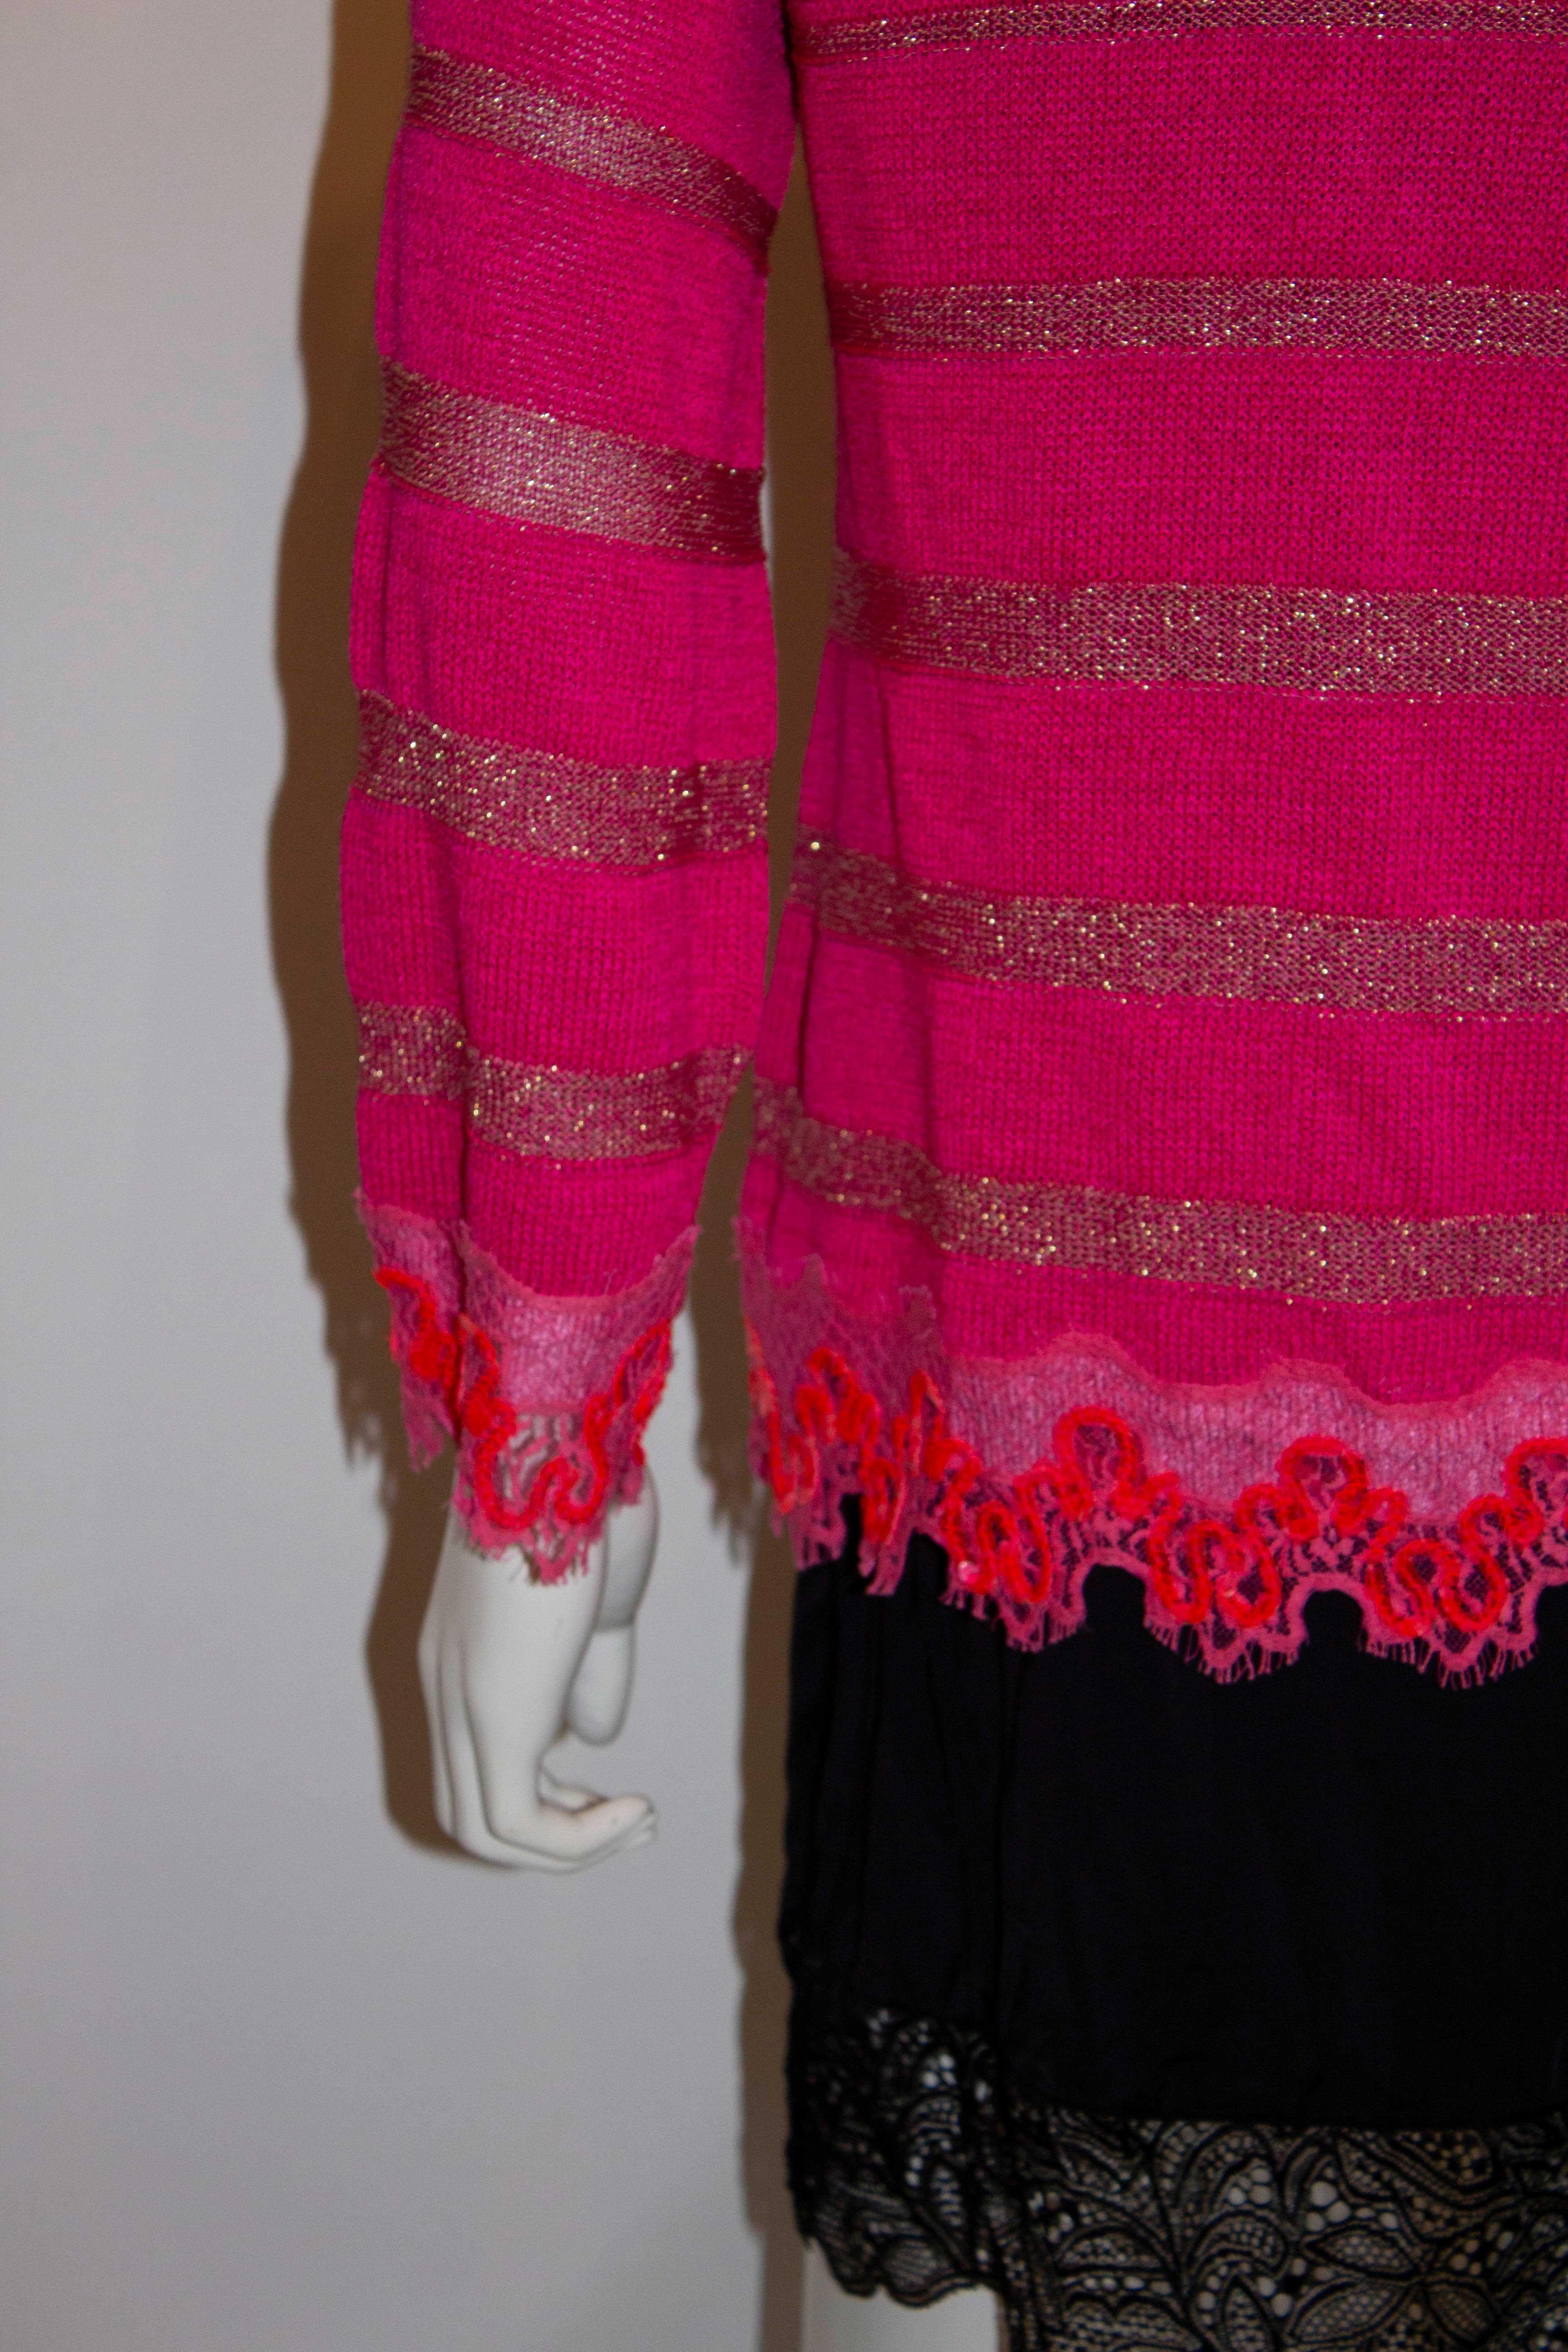 Ein tolles Zwillingsset, das Ihr Herbstoutfit aufpeppt. Ein hübsches rosa Mieder und  strickjacke von Christian Lacroiz, Bazzar  linie. Das Cami passt für eine Oberweite bis zu 38'', Länge 27'' und hat tolle Häkeldetails. Die Strickjacke hat einen